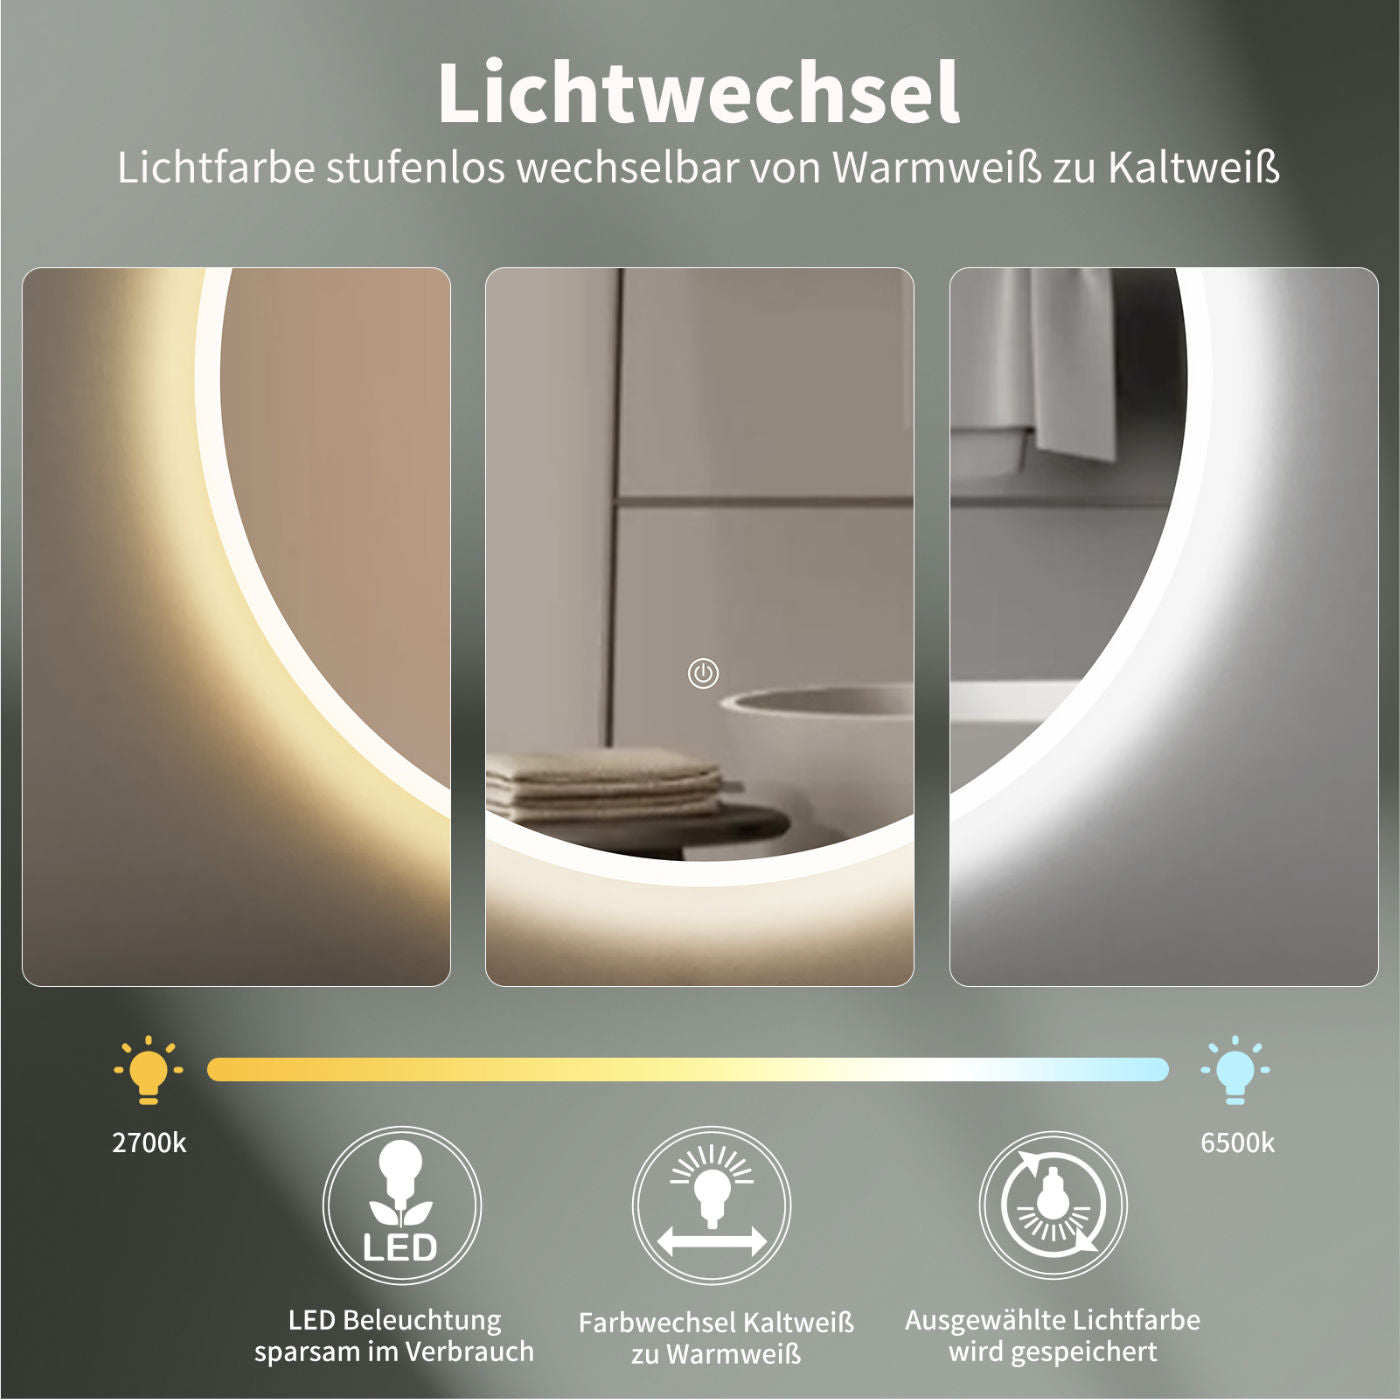 LED Badspiegel, design runder Badspiegel, Badspiegel mit led Beleuchtung, Lichtwechsel